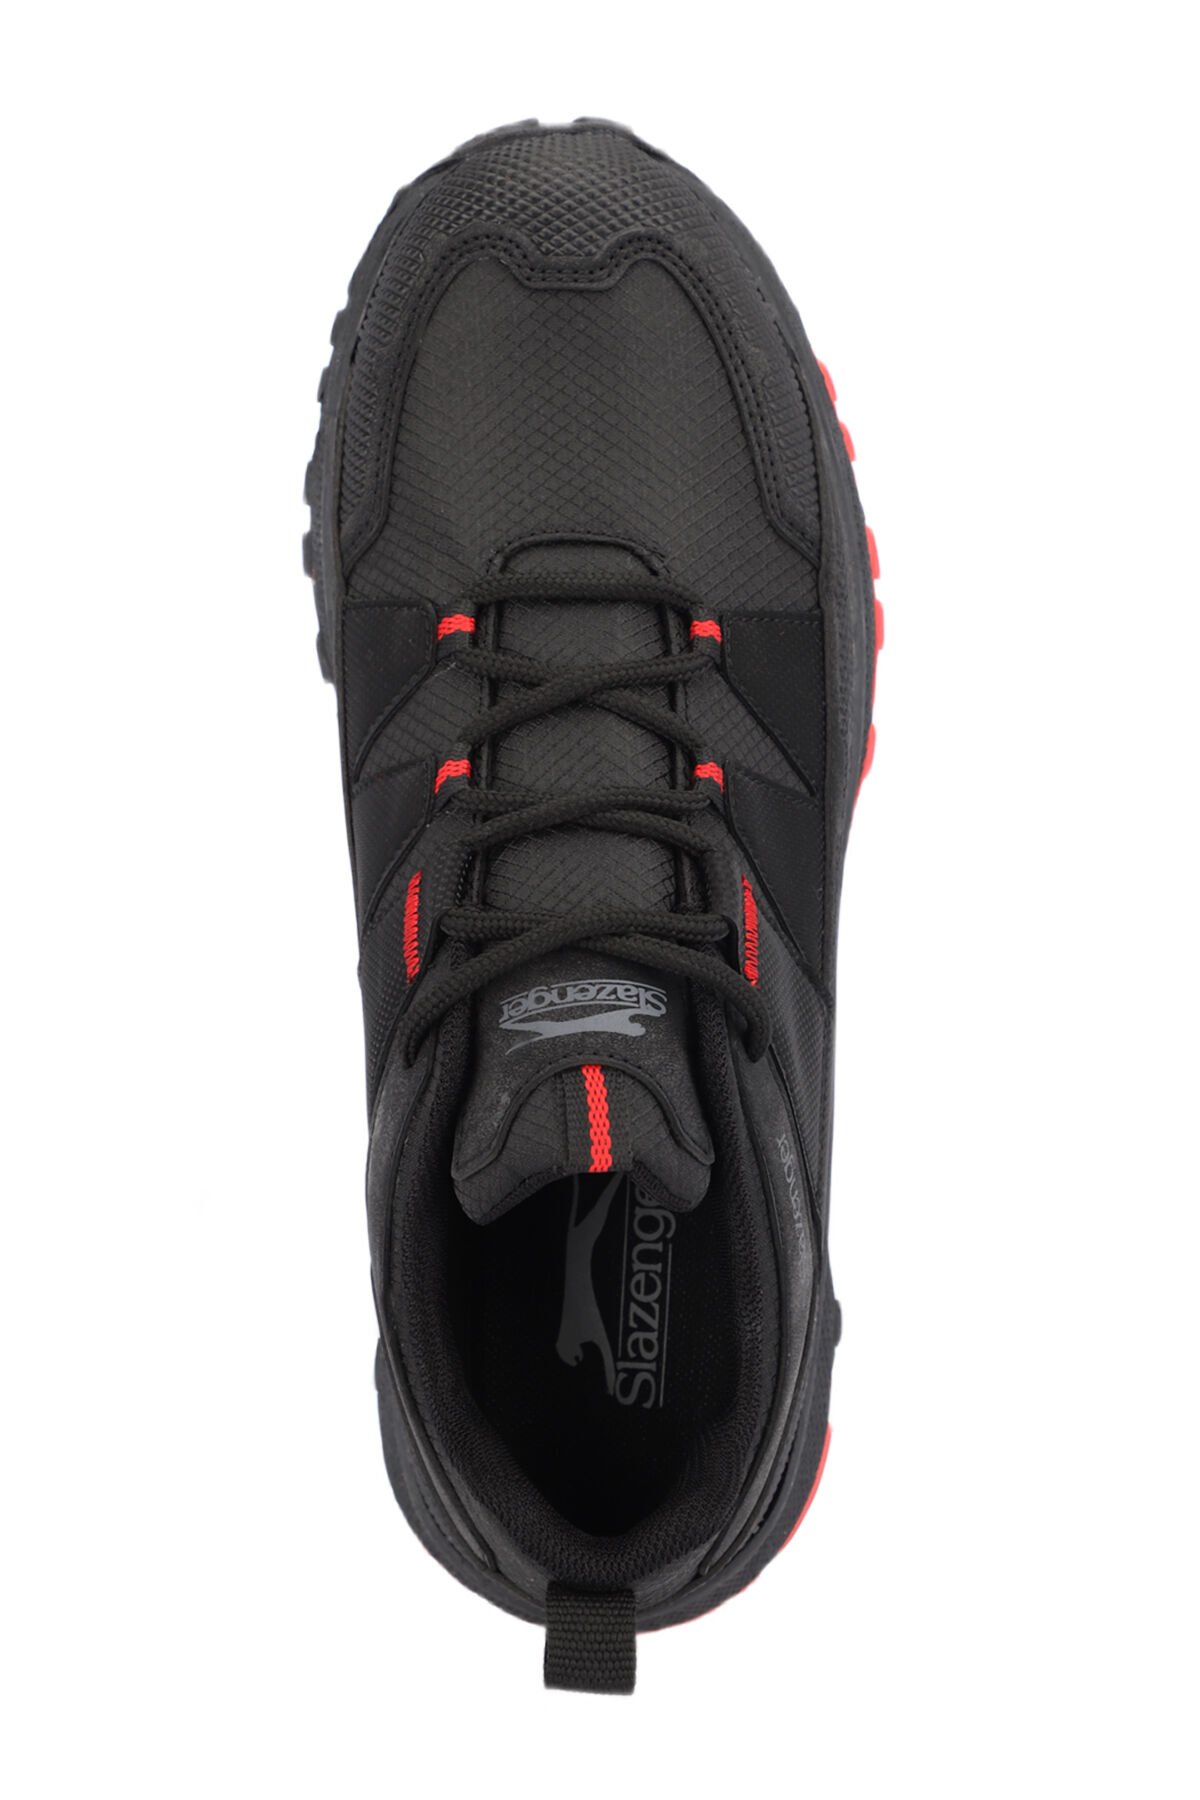 GRIFFIN I Erkek Outdoor Ayakkabı Siyah / Kırmızı - Thumbnail